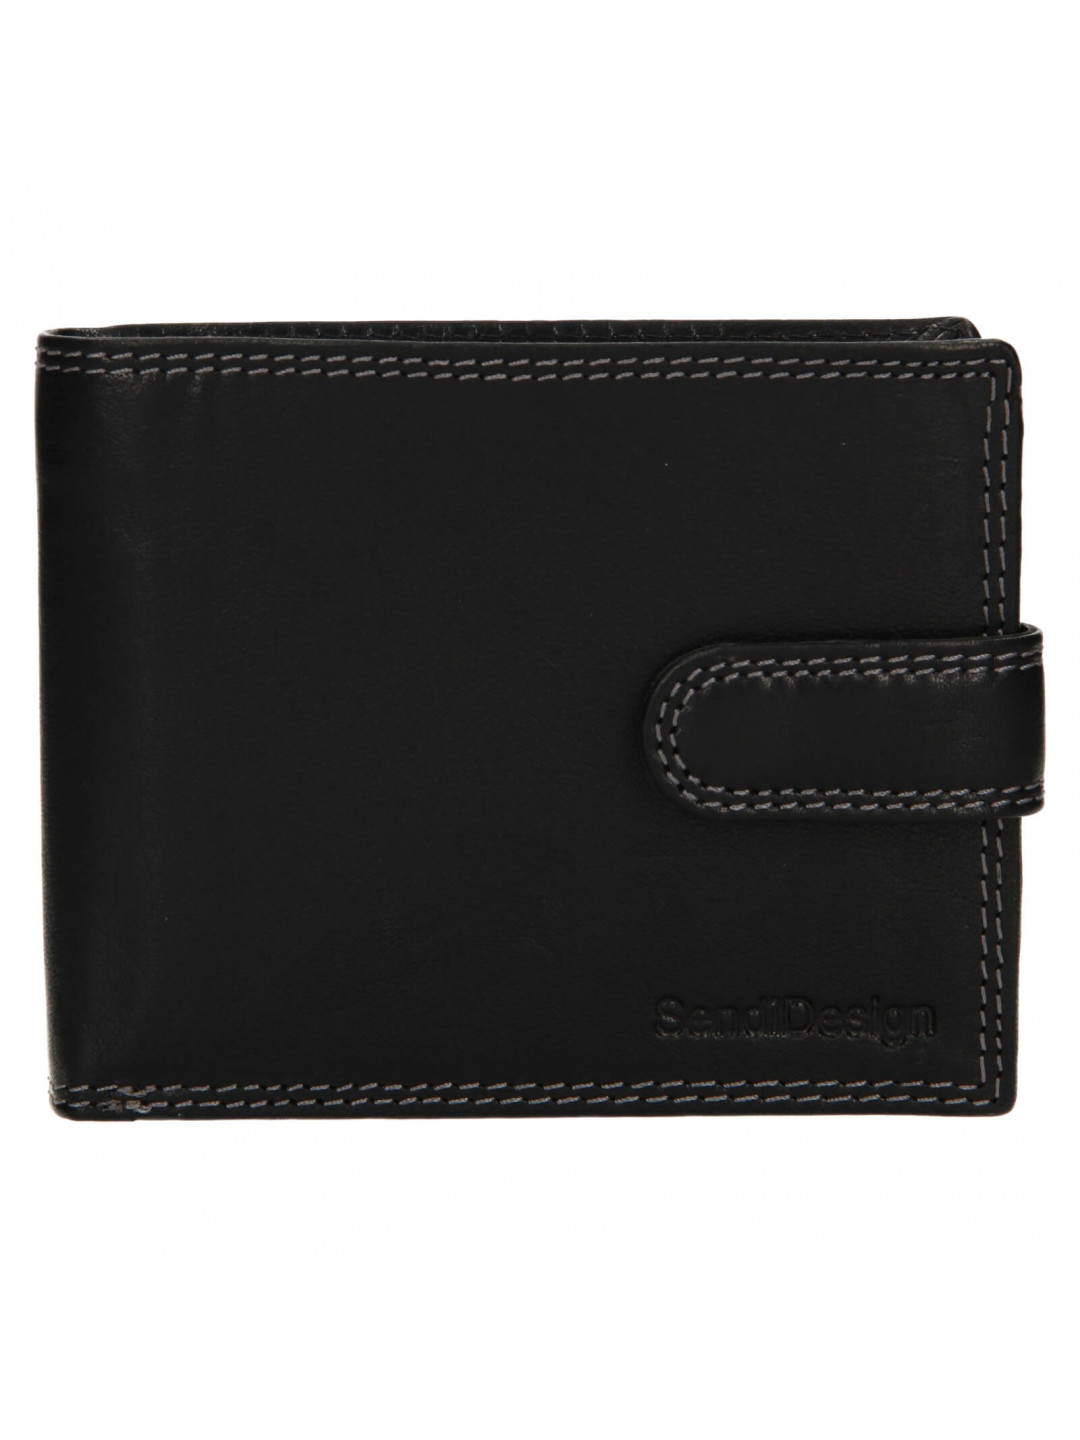 Pánská kožená peněženka SendiDesign Zrobek – černá